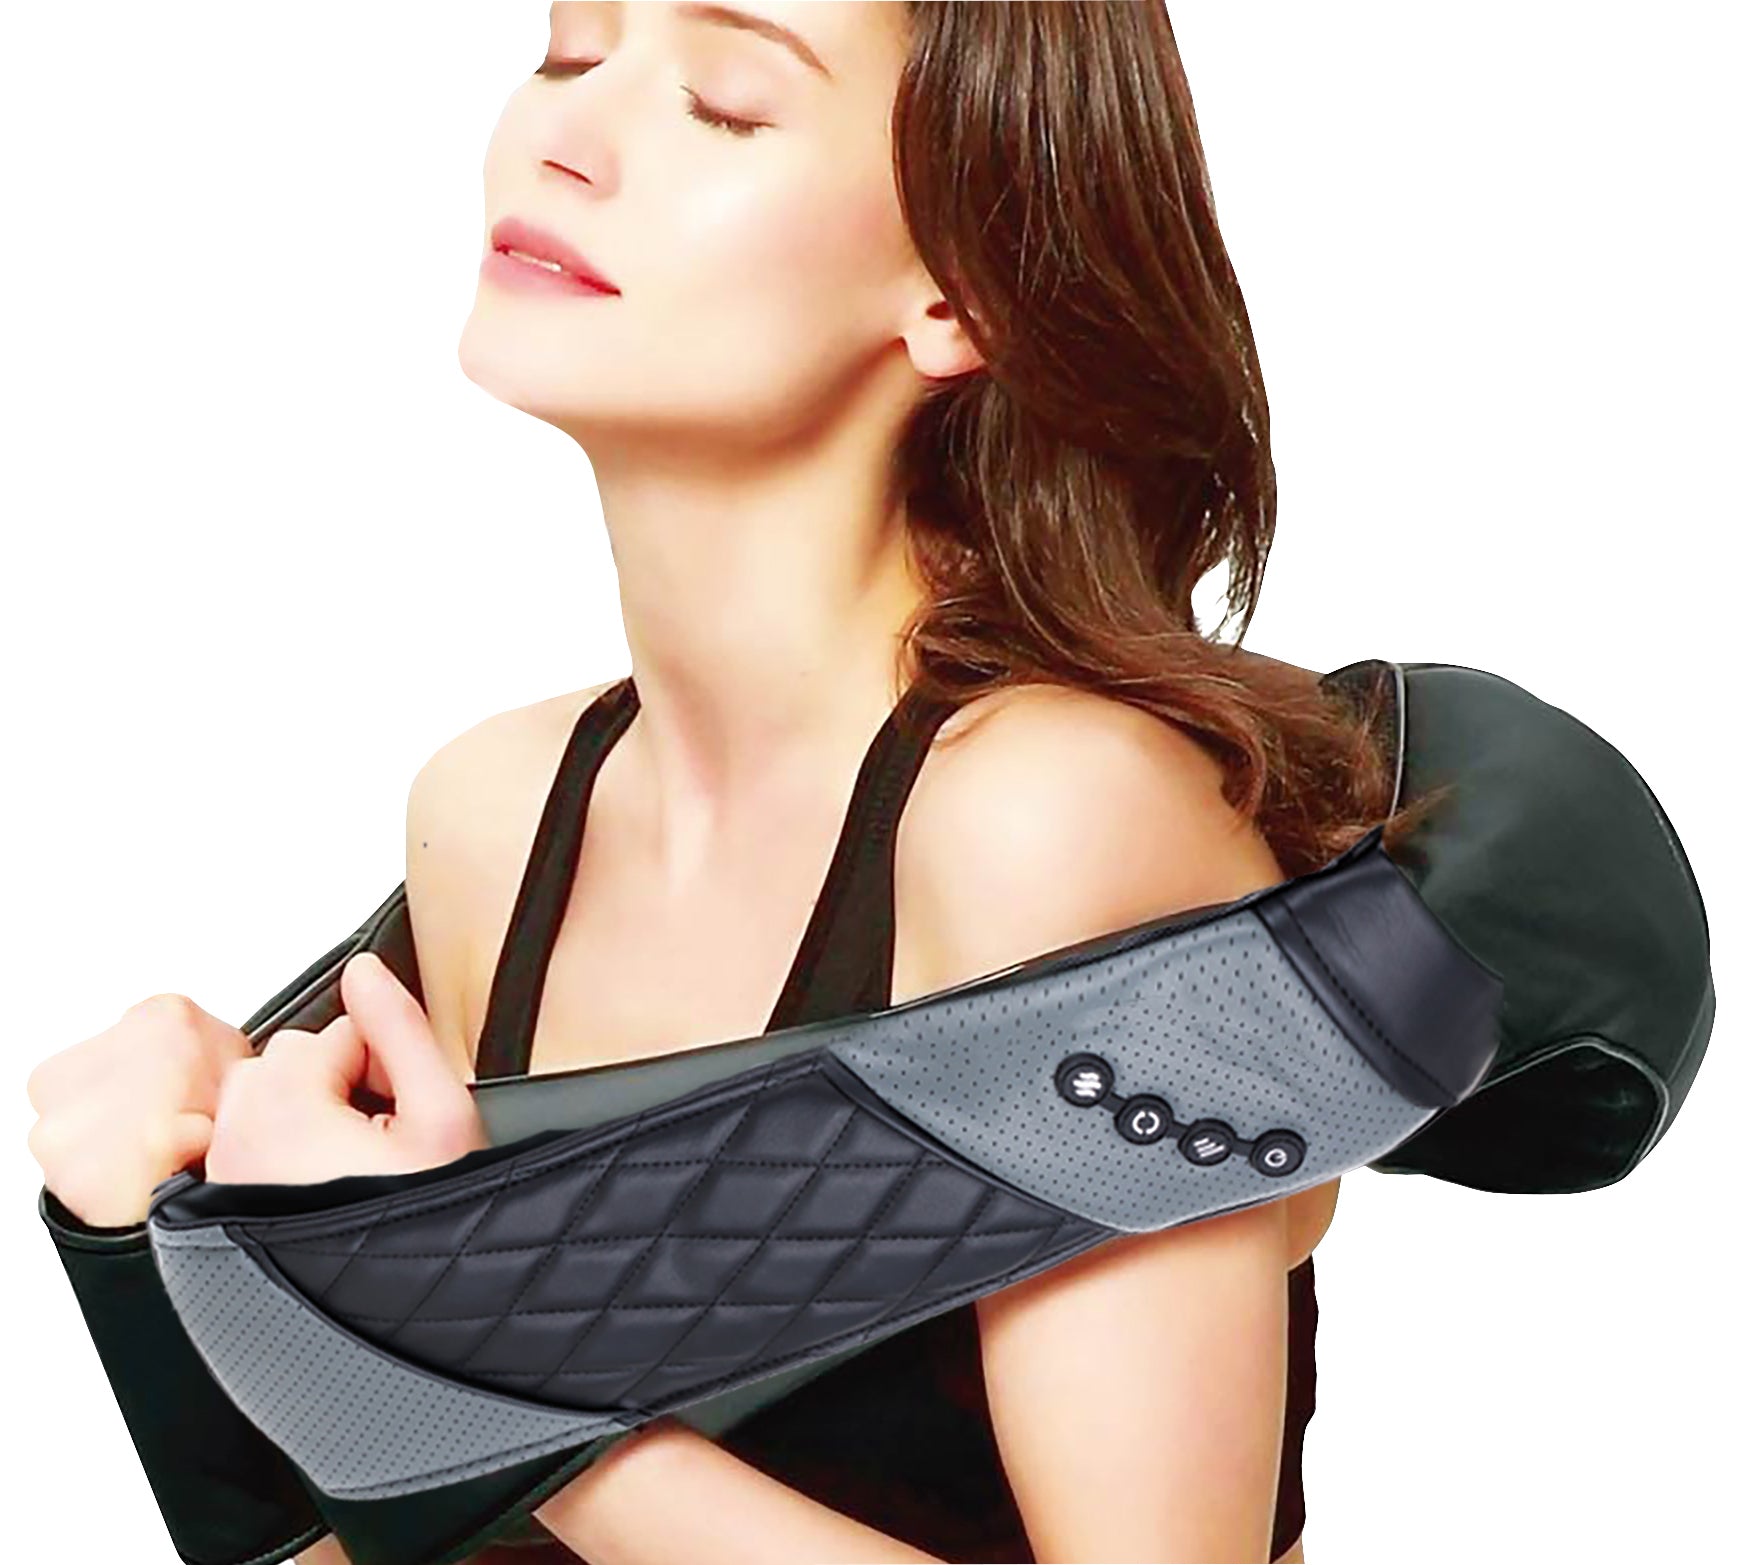 TESMED CERVICAL TECHNOLOGY 4.0 Nackenmassagegerät für Nacken und Schultern, fortschrittliche Technologie für sofortiges Wohlbefinden